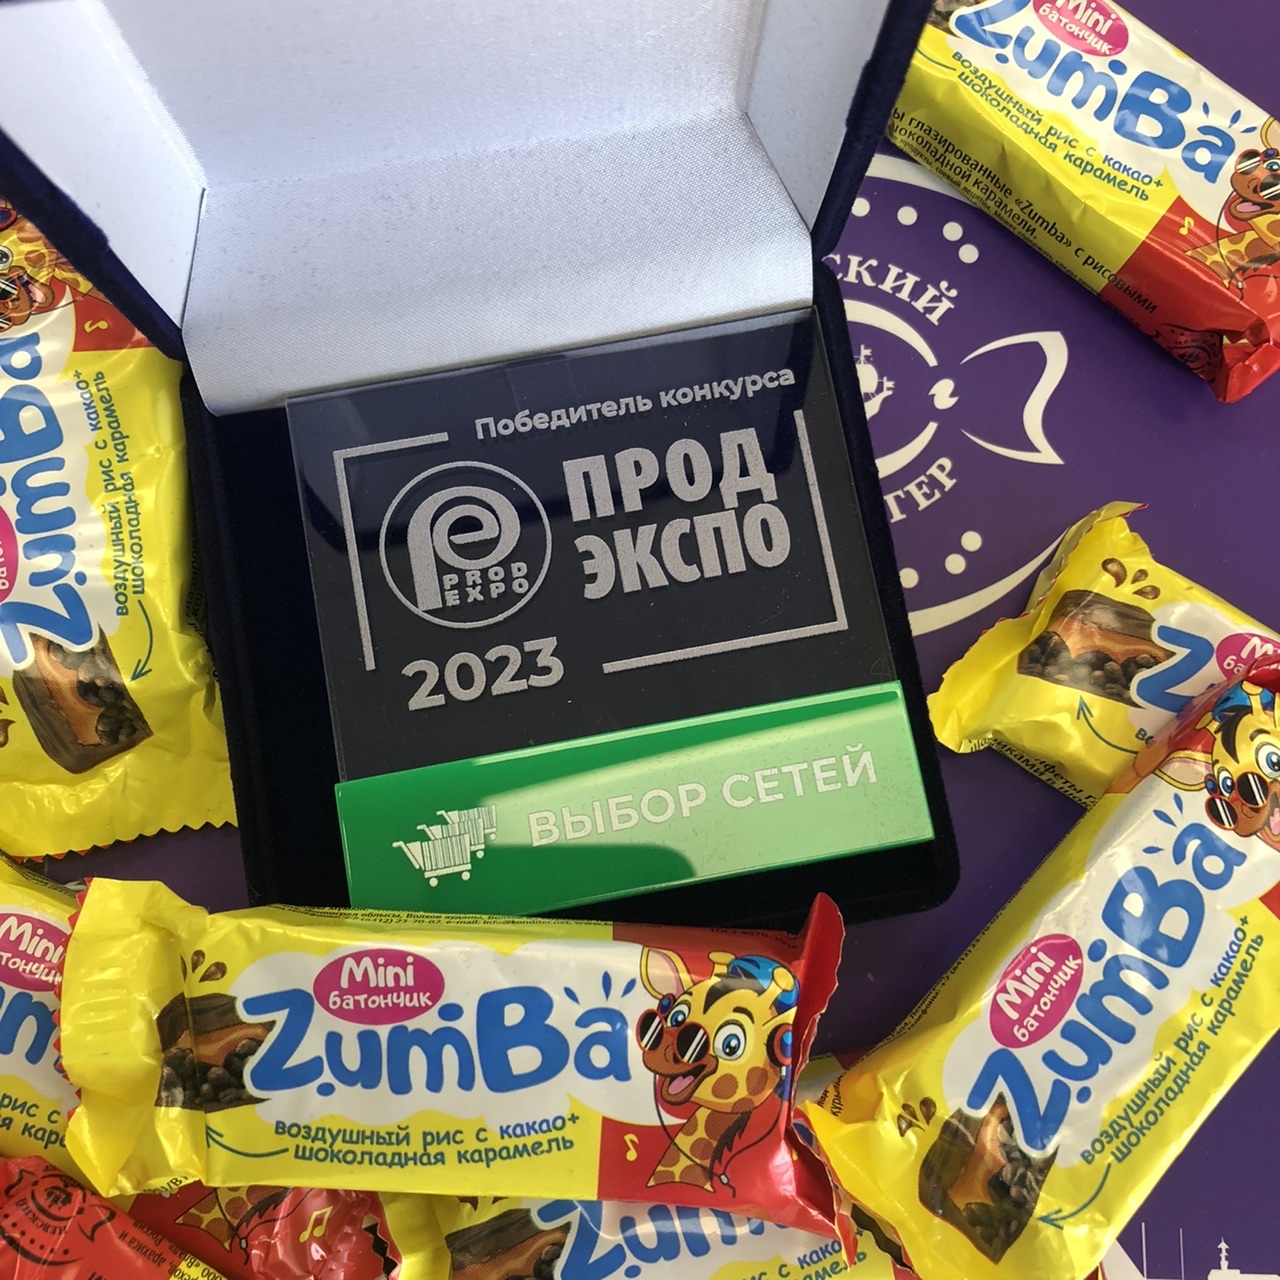 «Выбор сетей» пал на конфеты «Zumba» от «Невского кондитера»